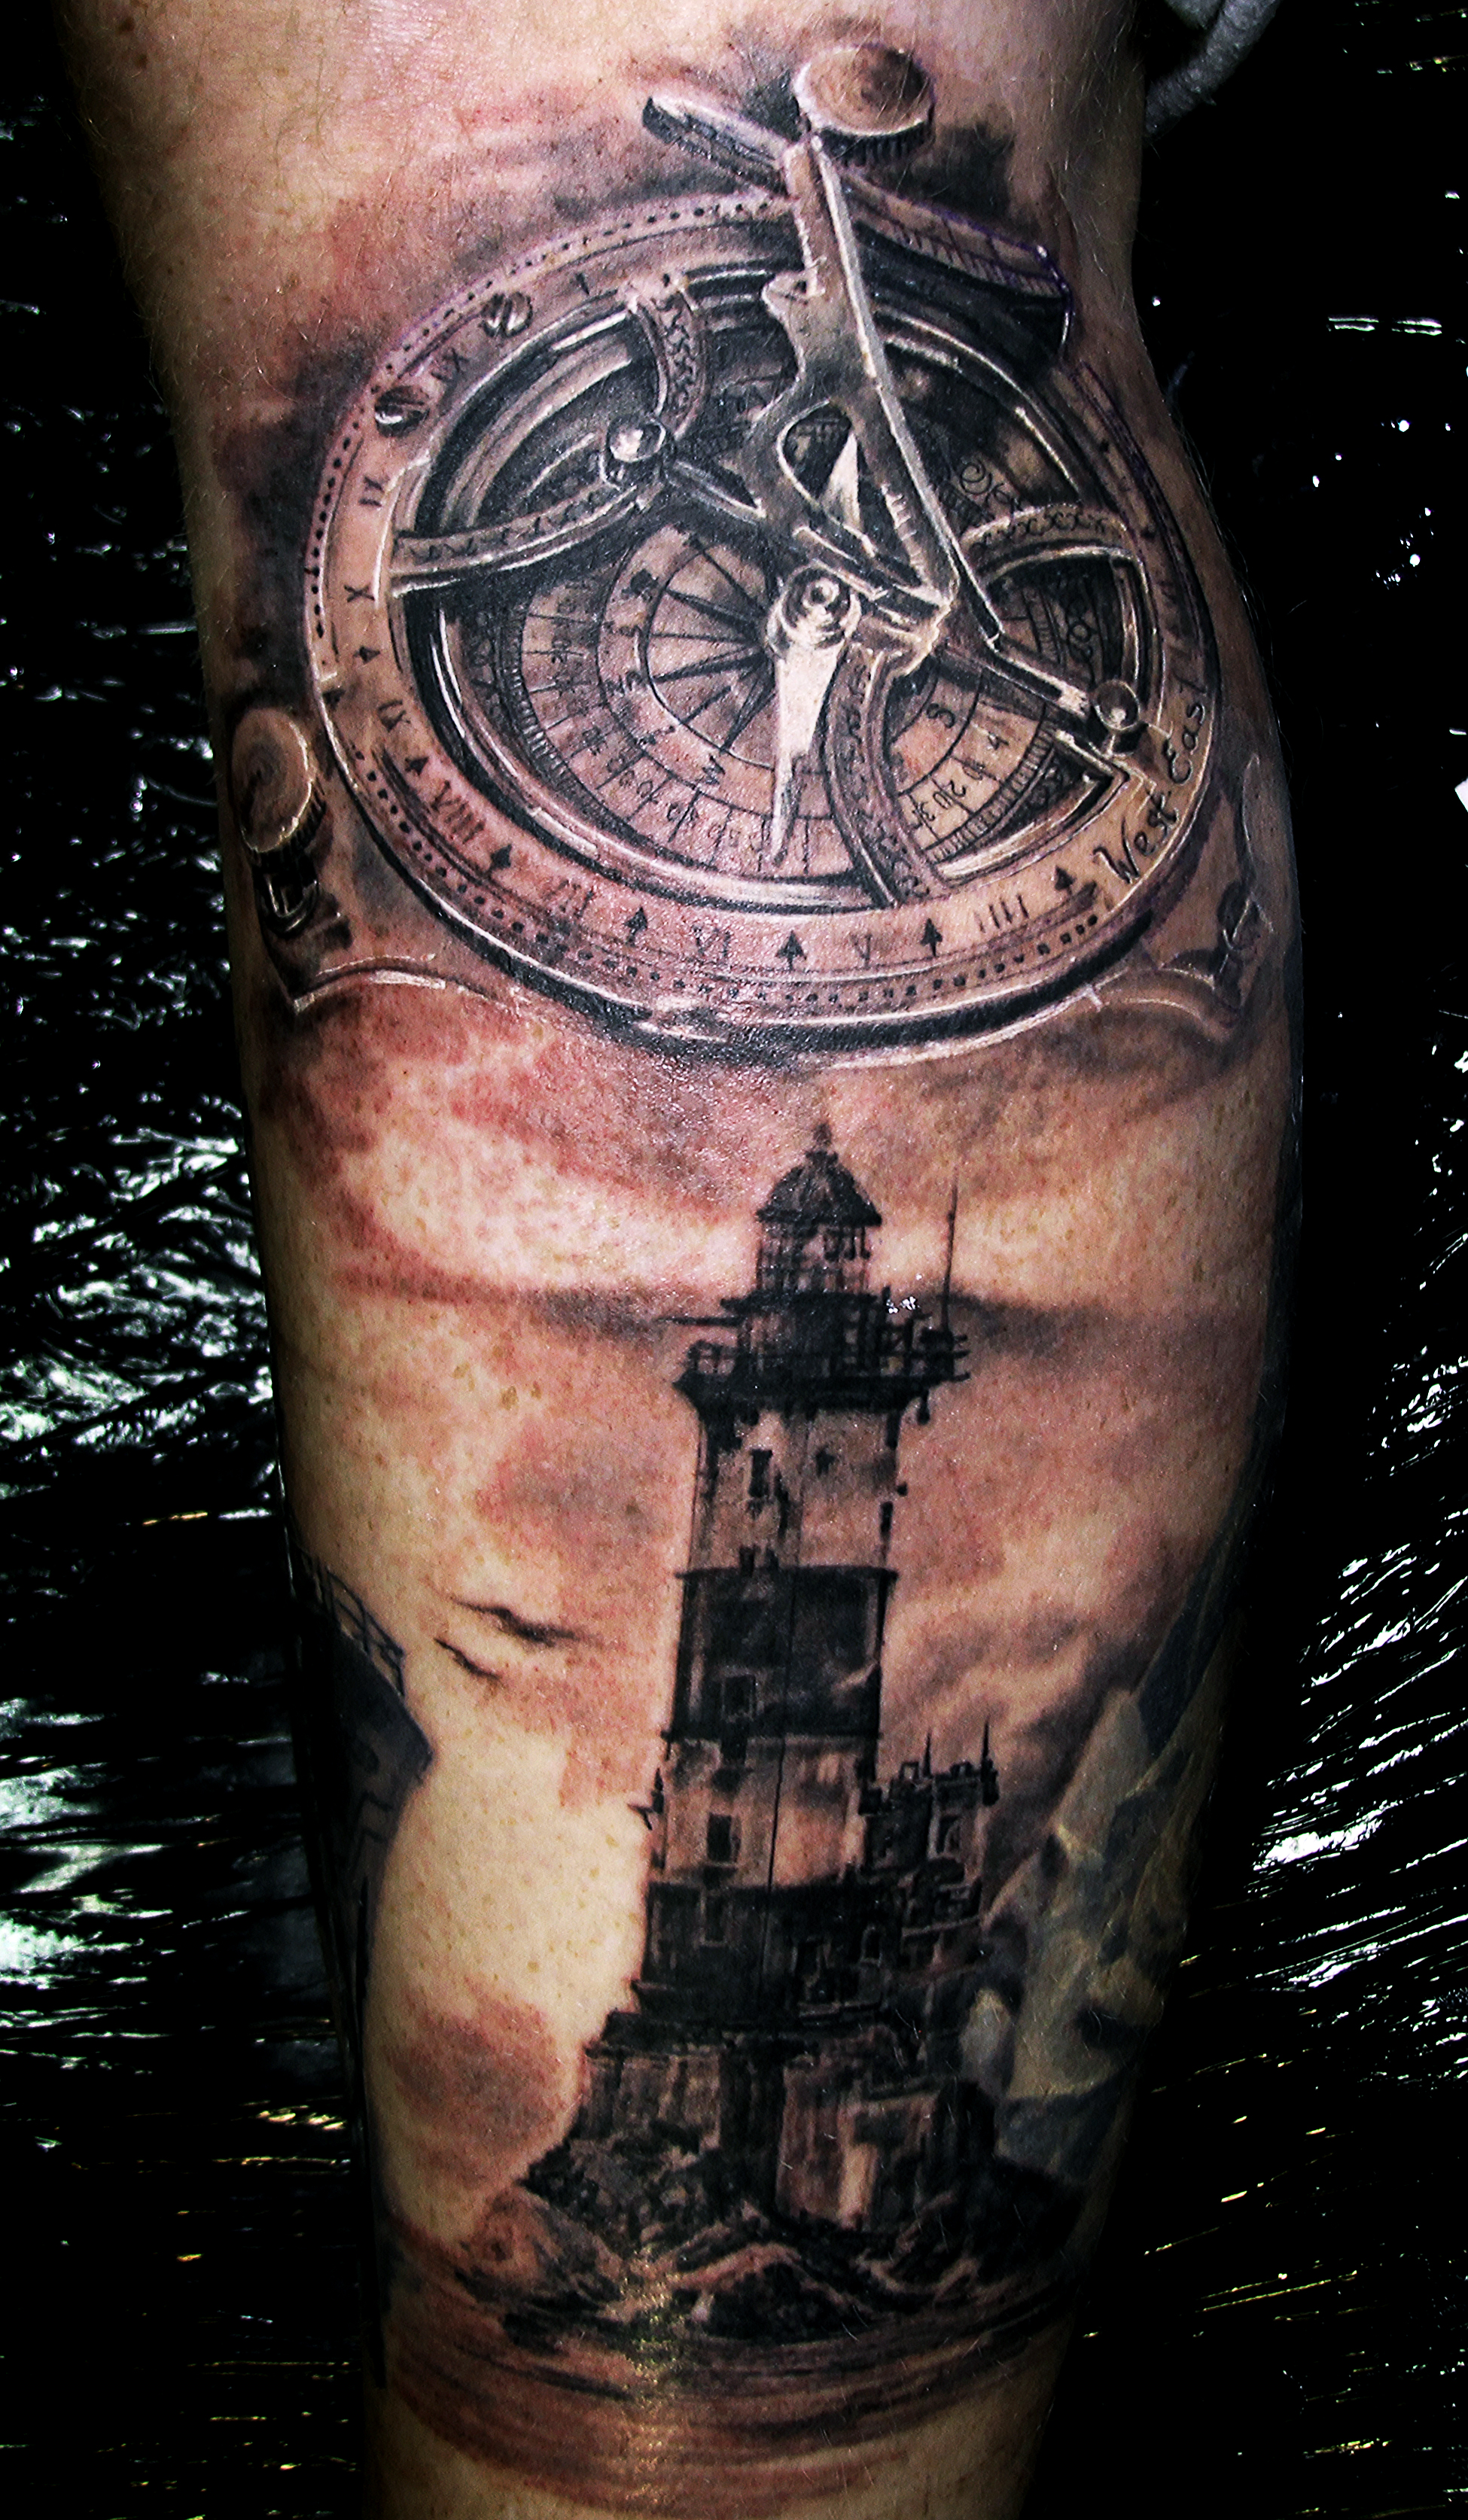 91 Free Download Tattoo Kompas HD Tattoo Images